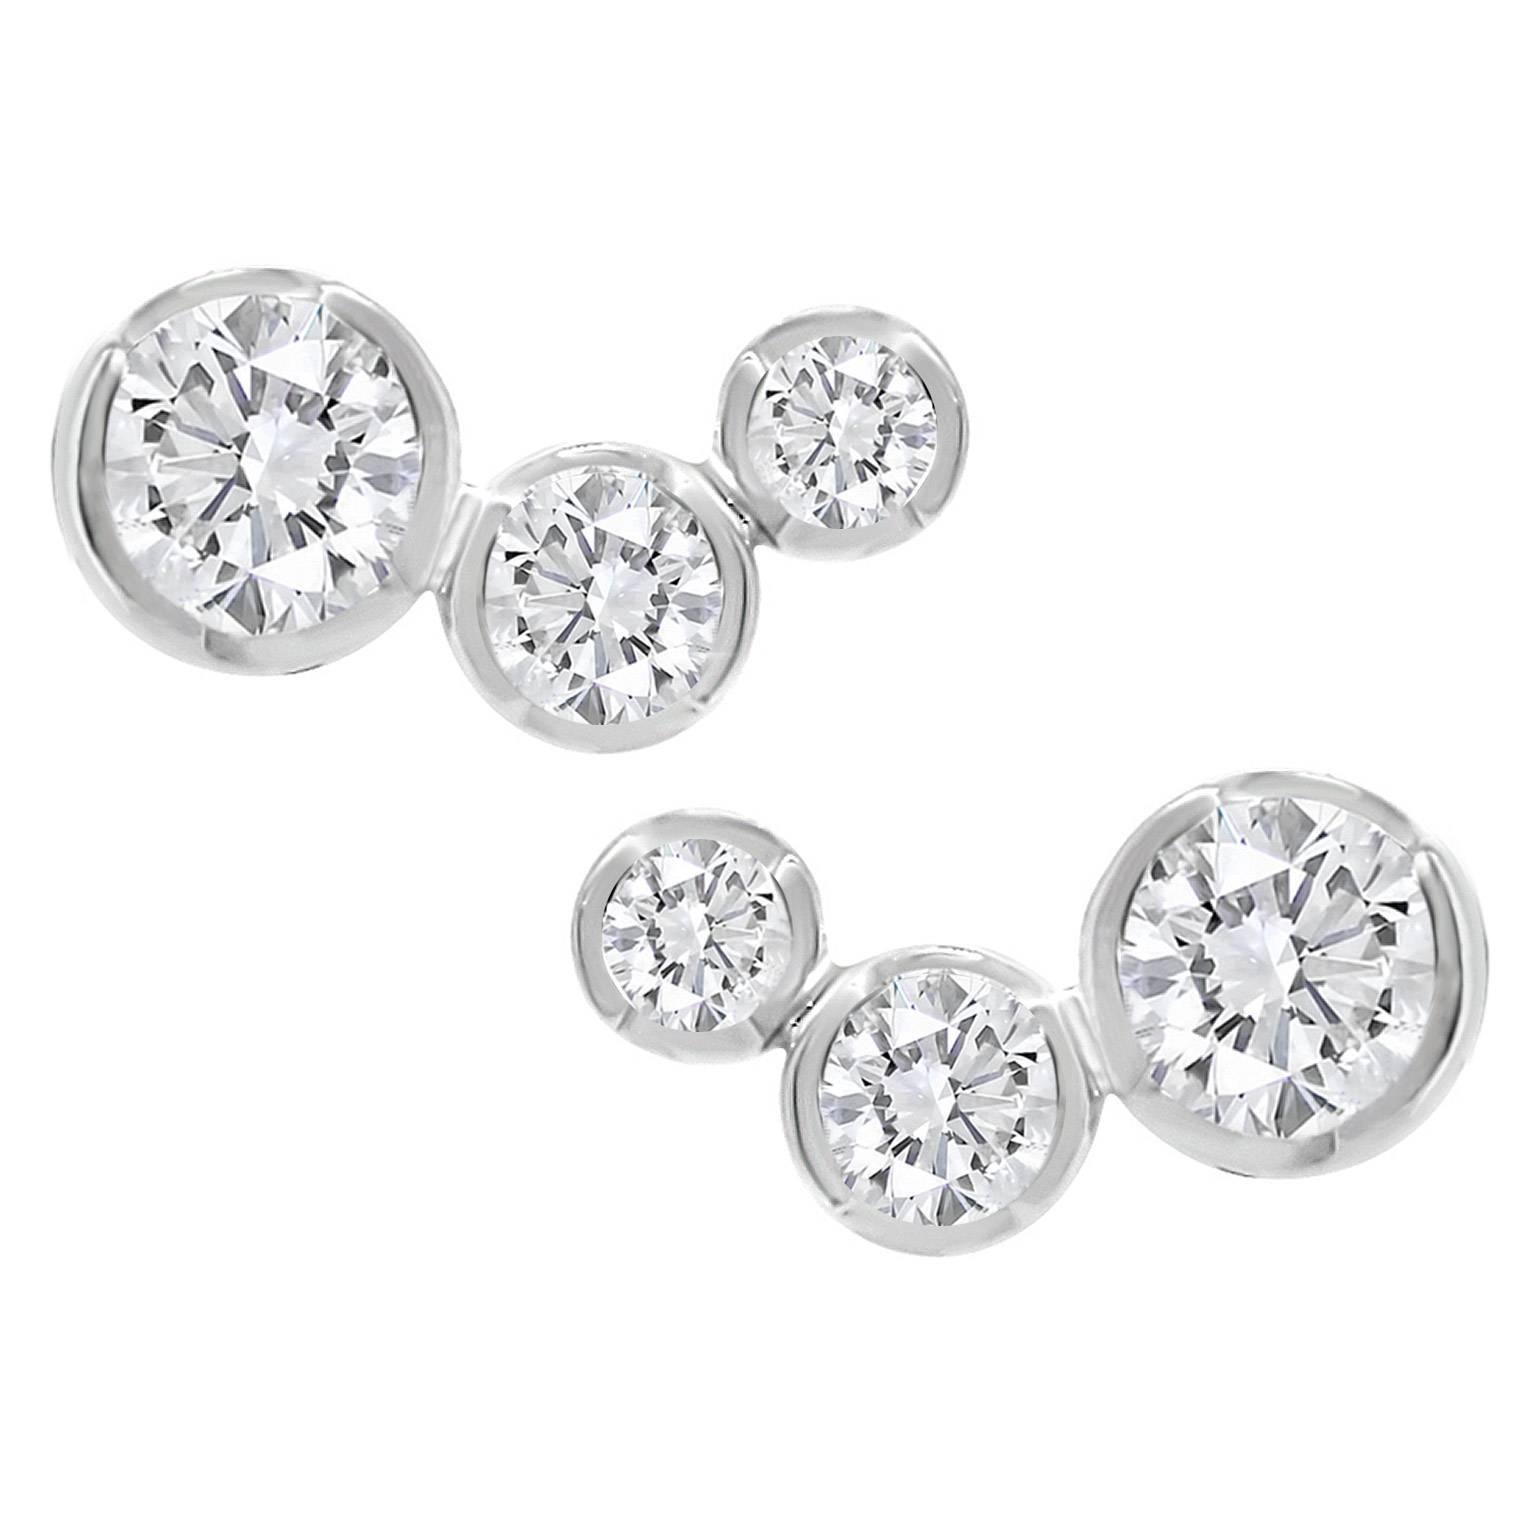 Lizunova Round White Diamond Stud Earrings in 18k White Gold For Sale